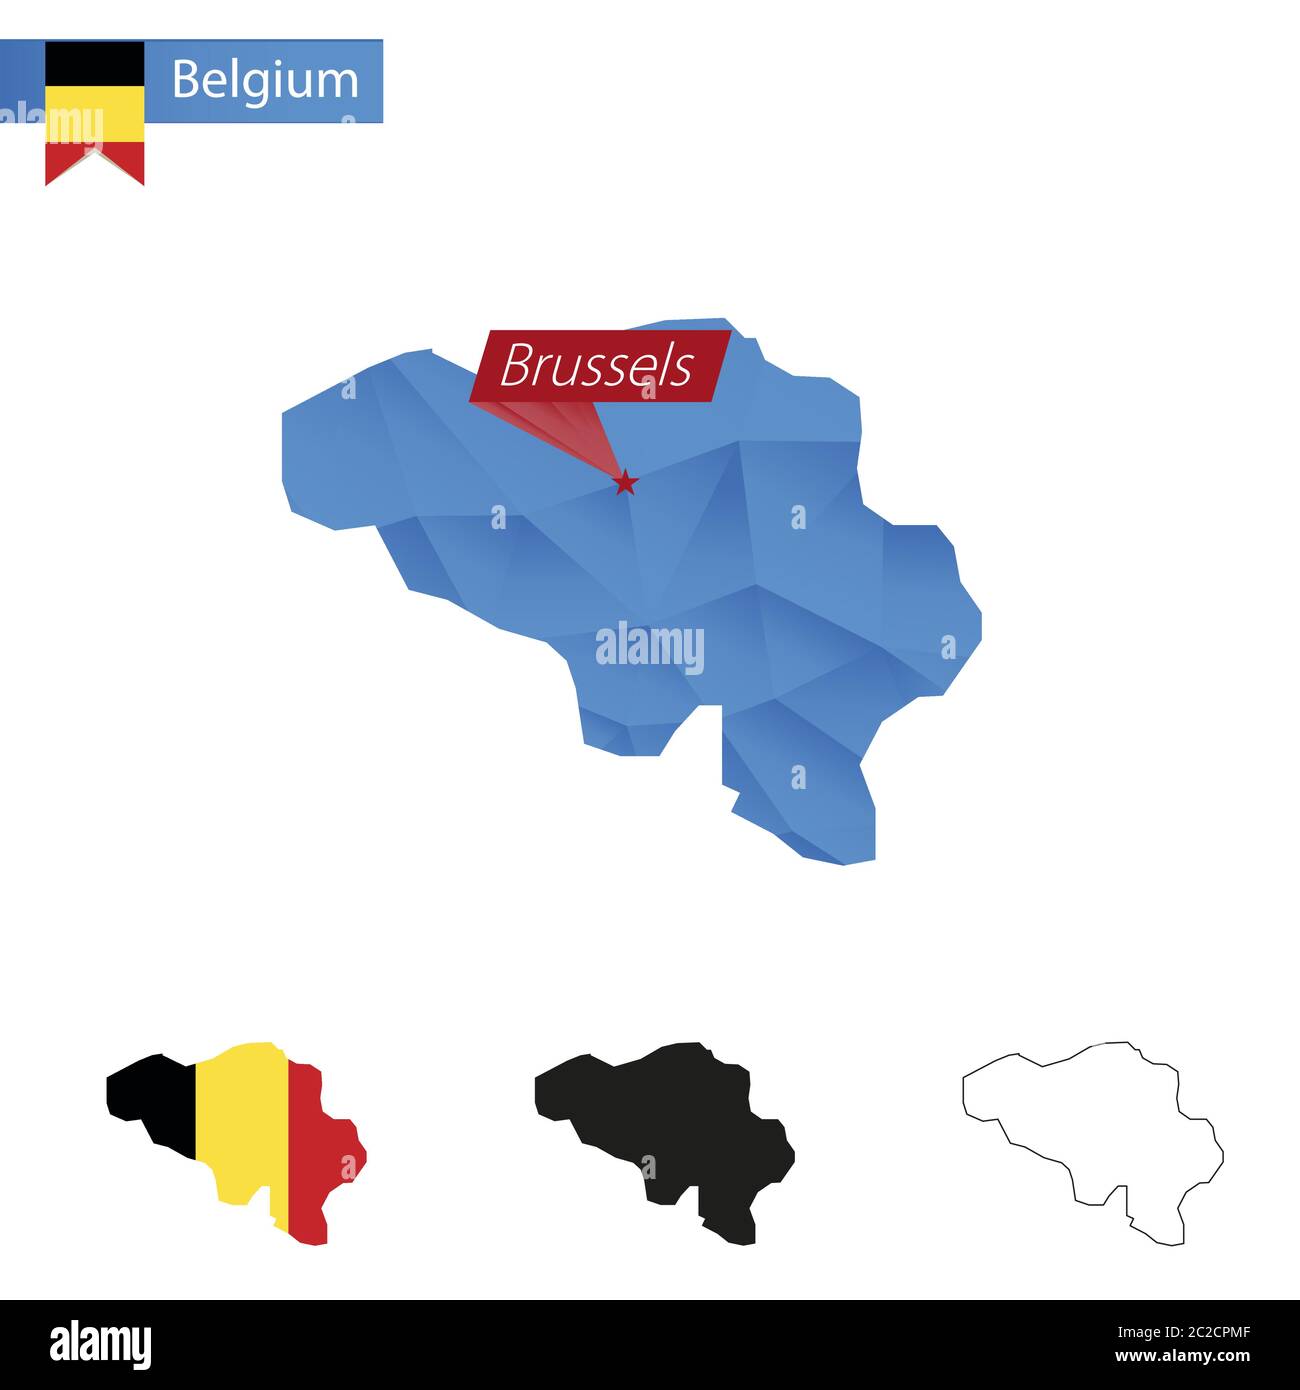 belgium language conflict